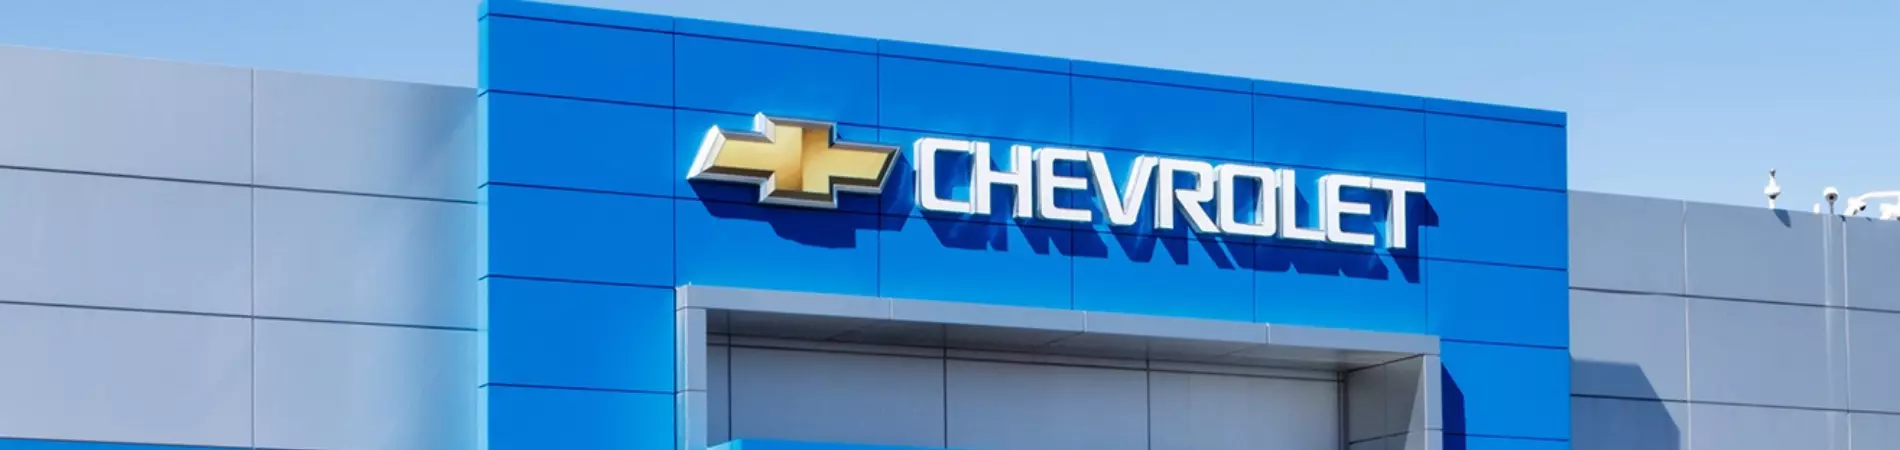 Venda e ofertas de carros novos e seminovos na concessionária Chevrolet CVC. Peças genuínas GM, acessórios automotivos originais e serviços de manutenção e revisão de veículos.